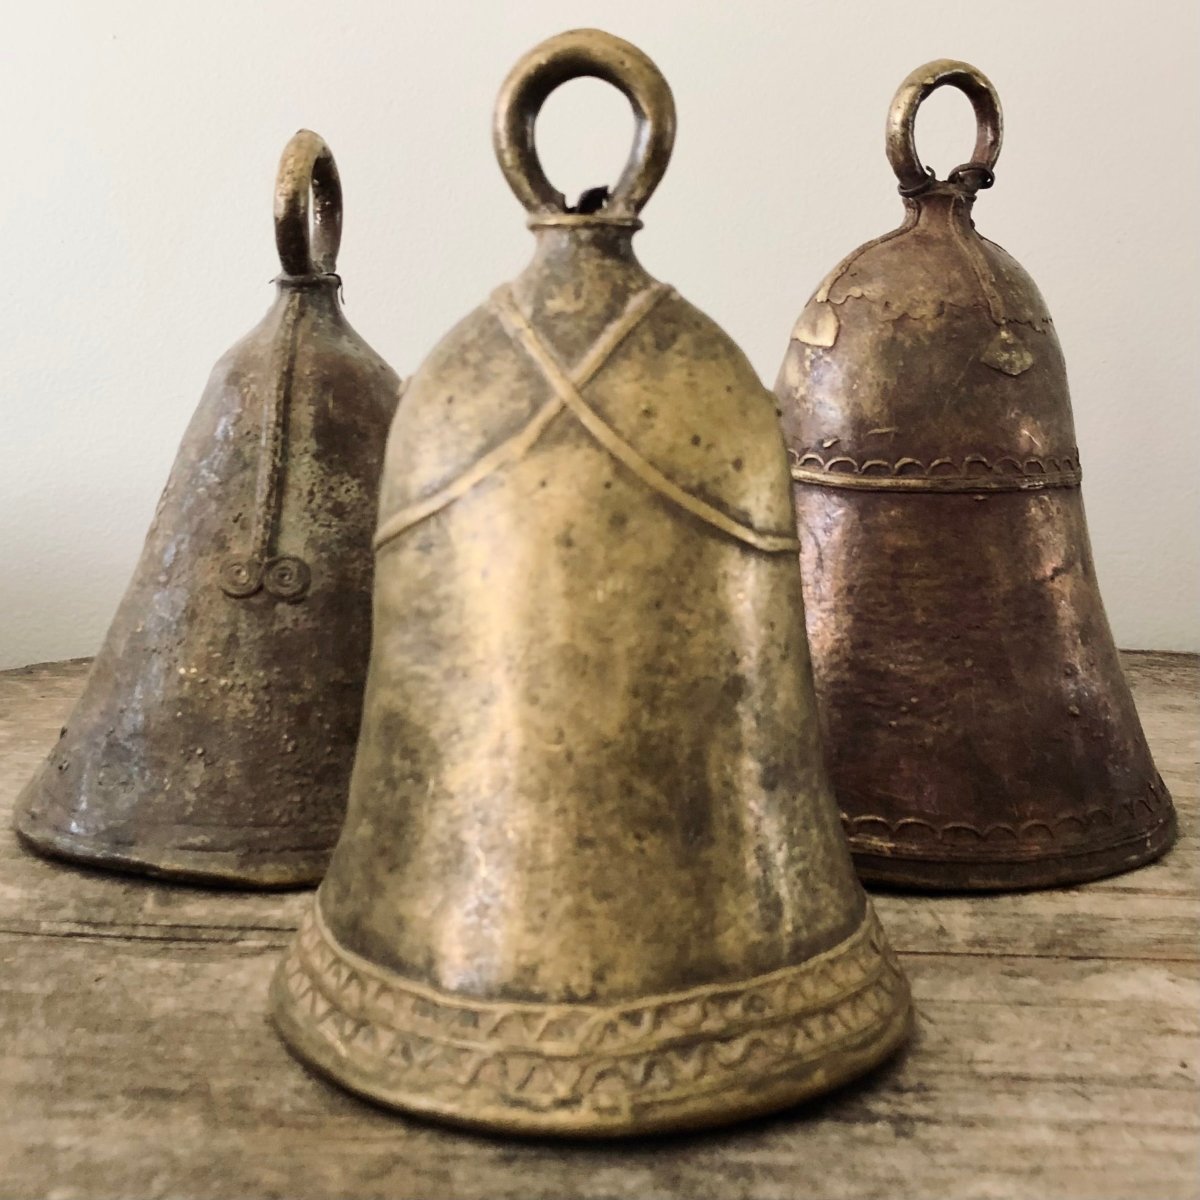 Antique Bells - Antique